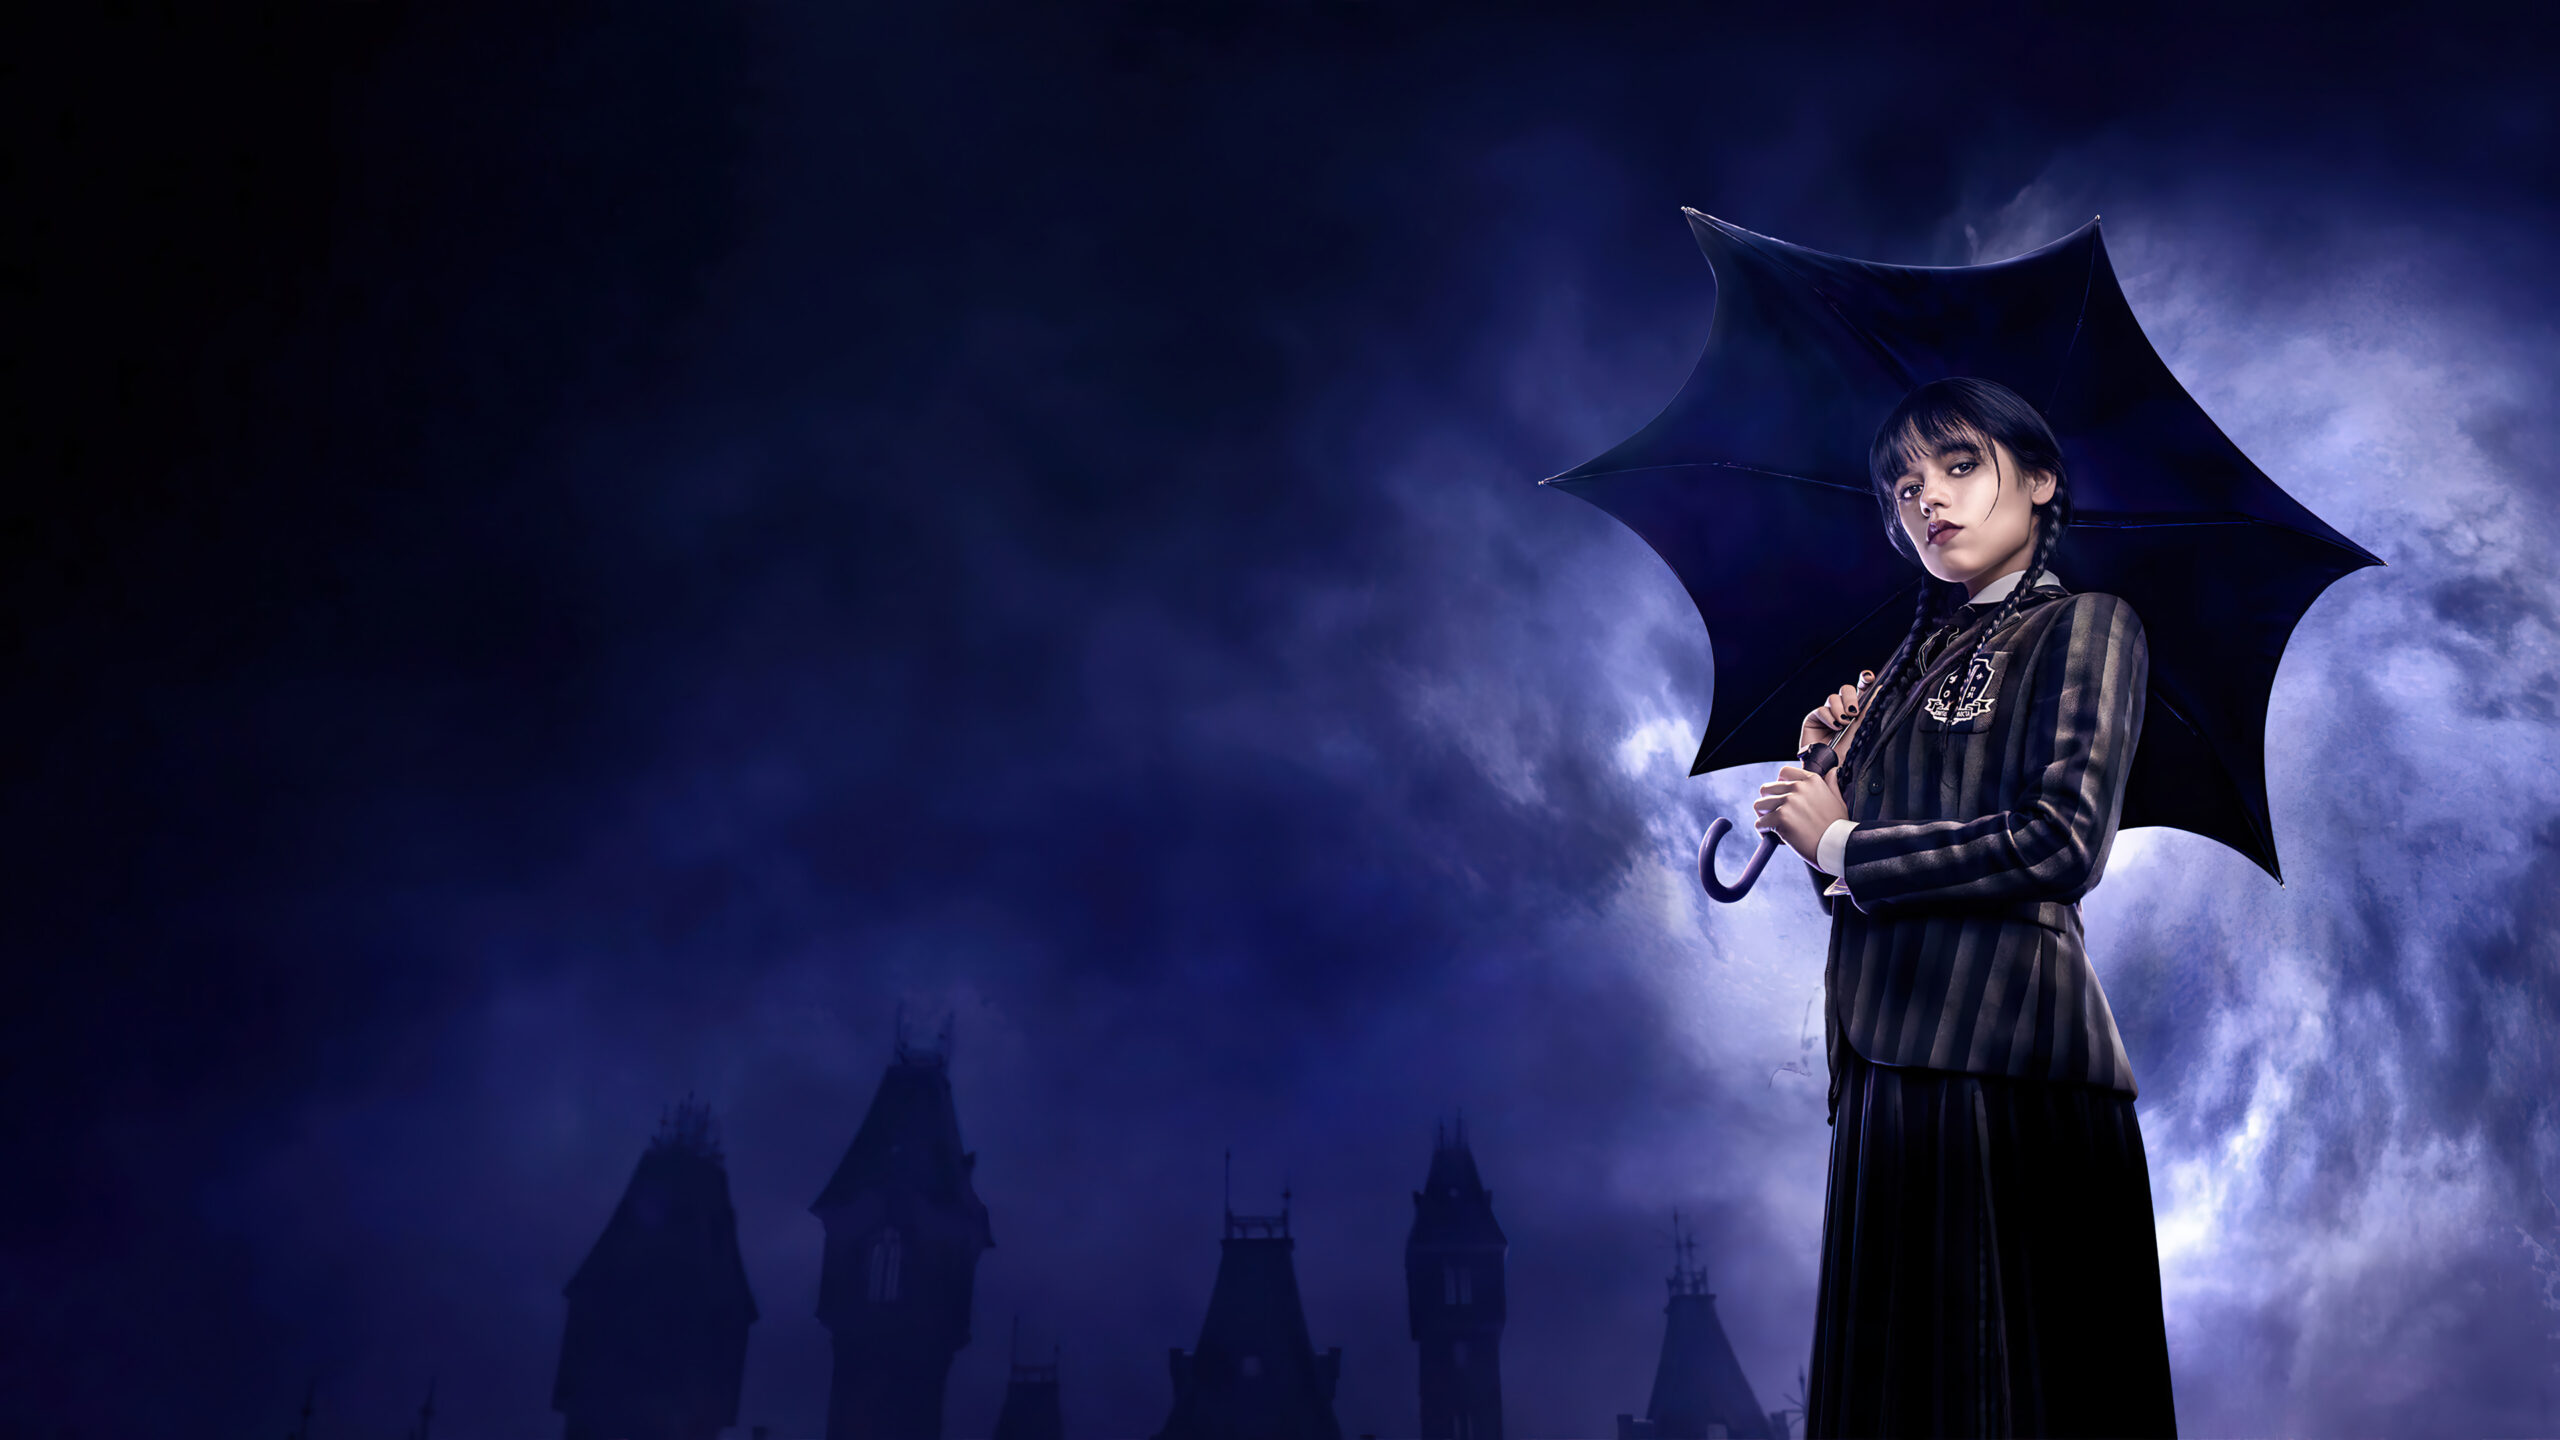 Fondos de Pantalla de Merlina Addams - La serie de Netflix de la familia Addams en 4K